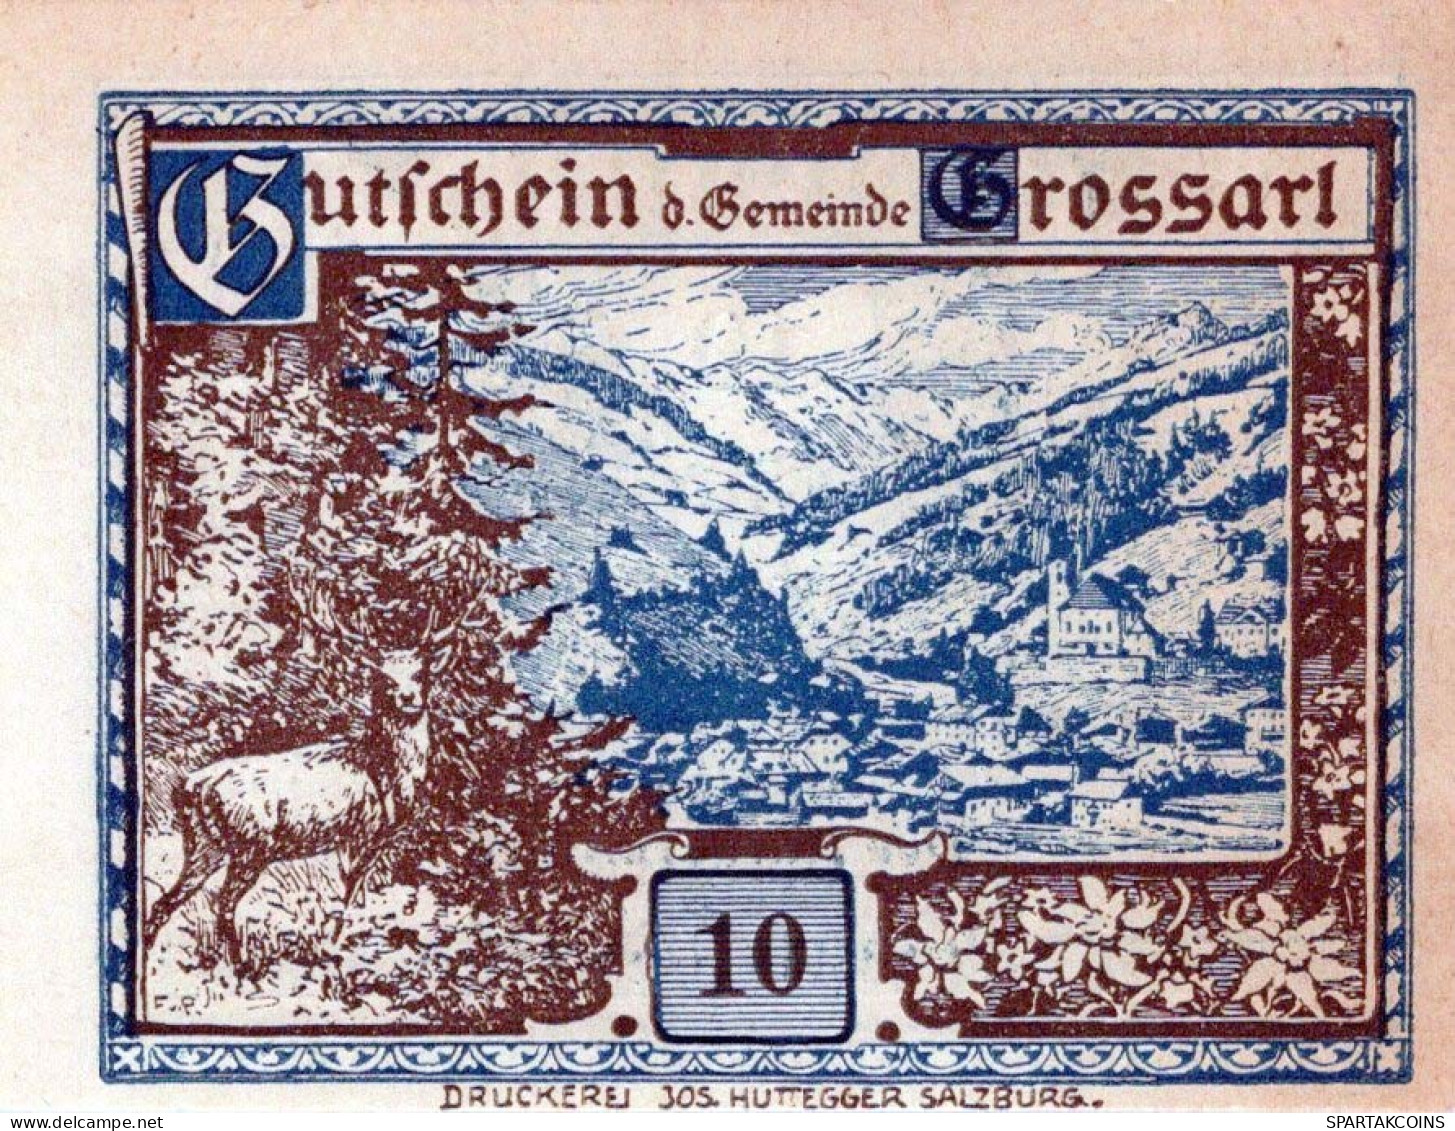 10 HELLER 1920 Stadt GROSSARL Salzburg Österreich Notgeld Banknote #PE998 - [11] Local Banknote Issues